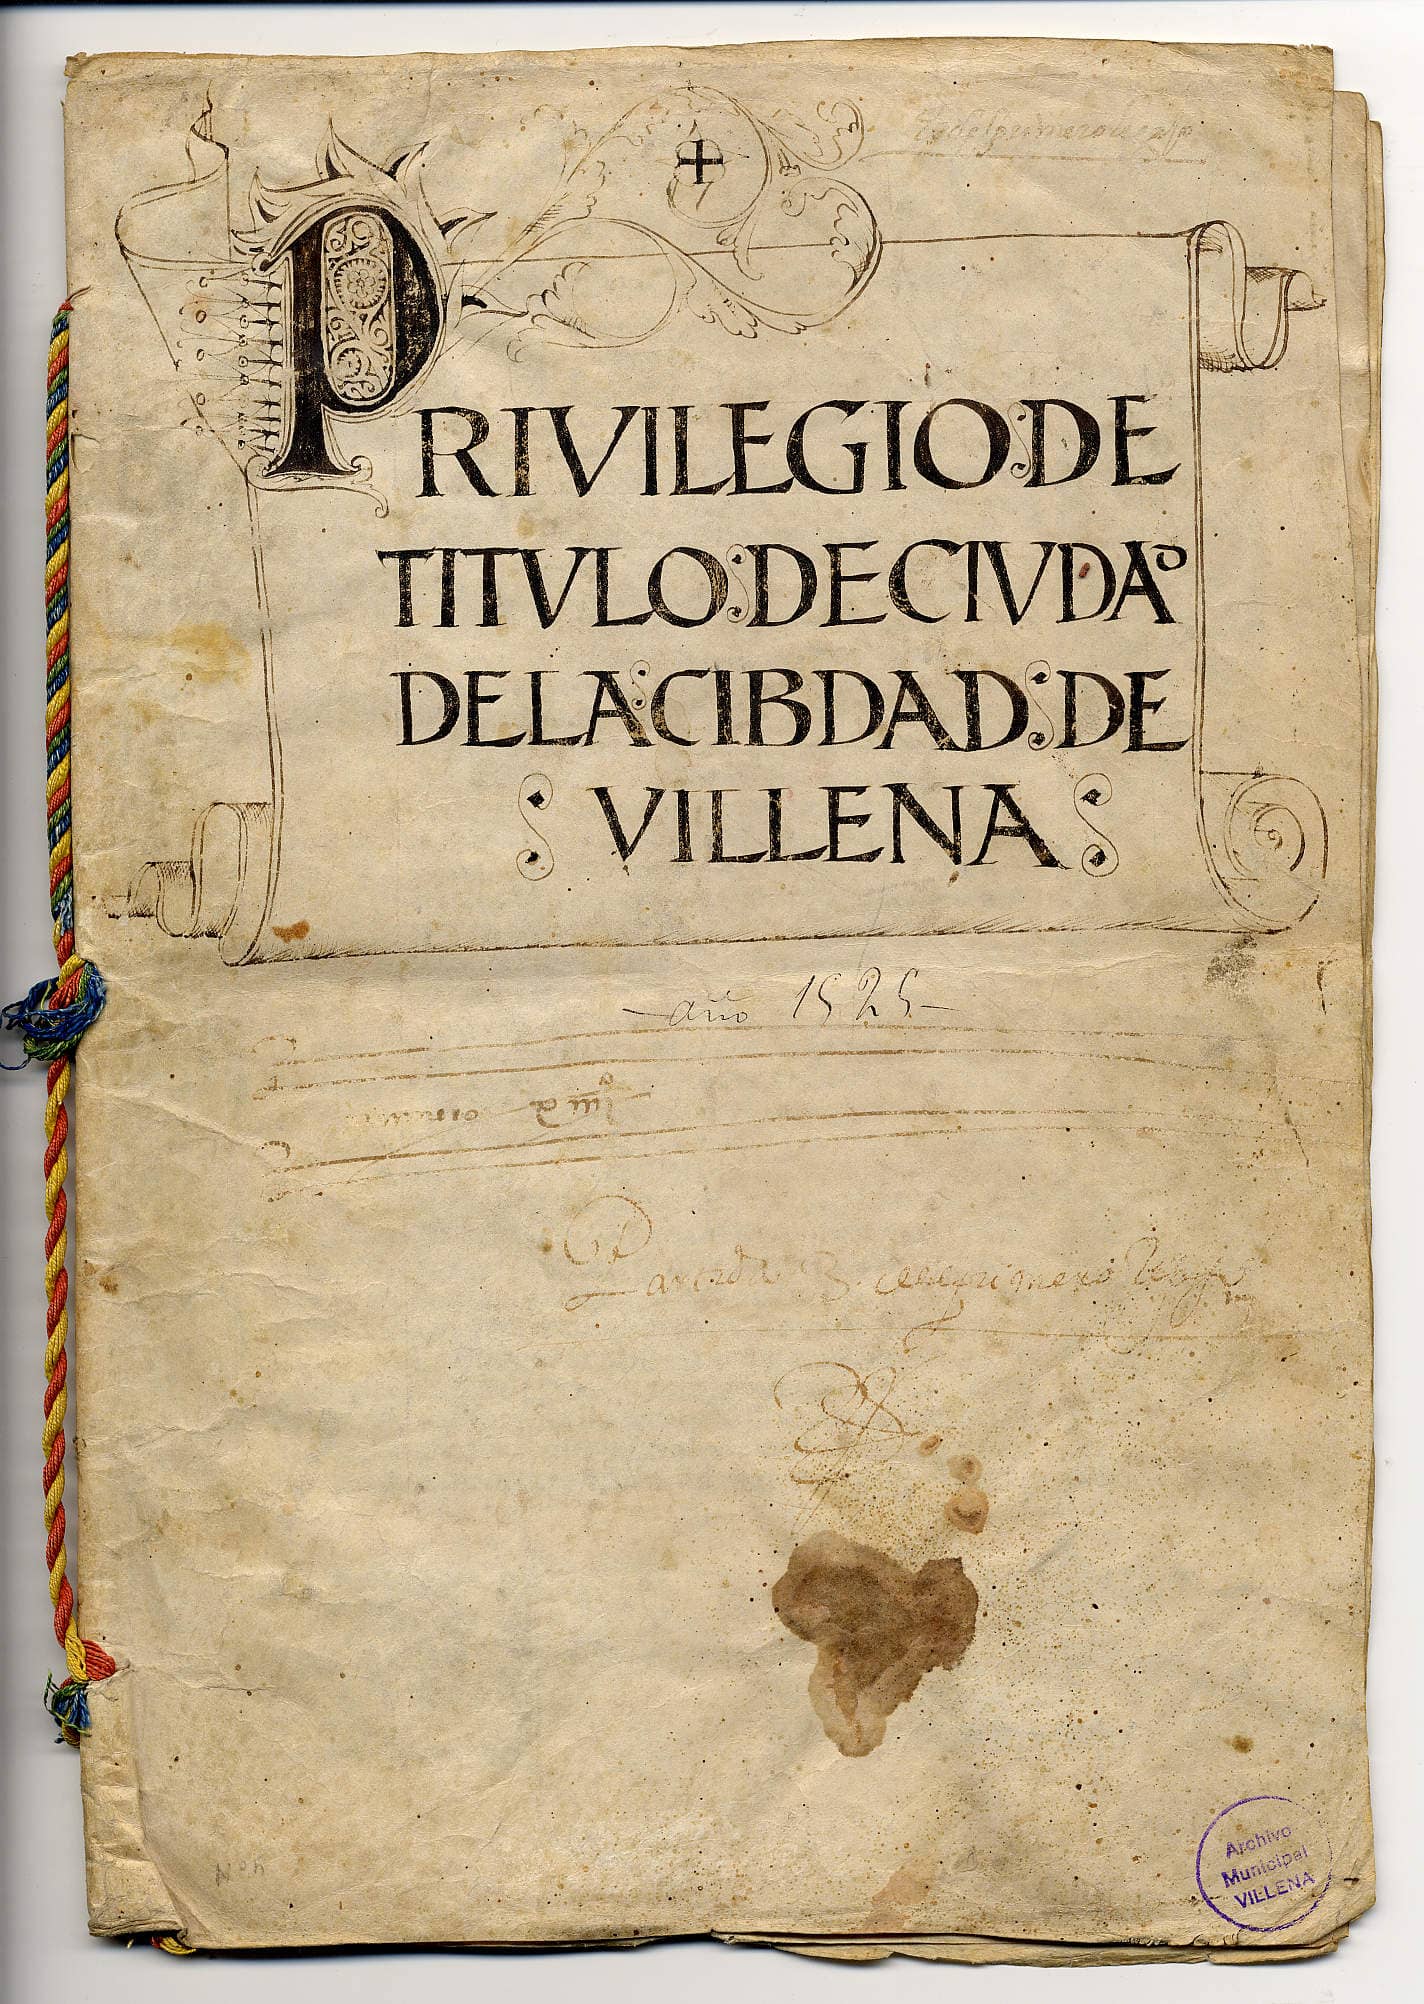 25 de febrero,  492 aniversario de Villena como ciudad